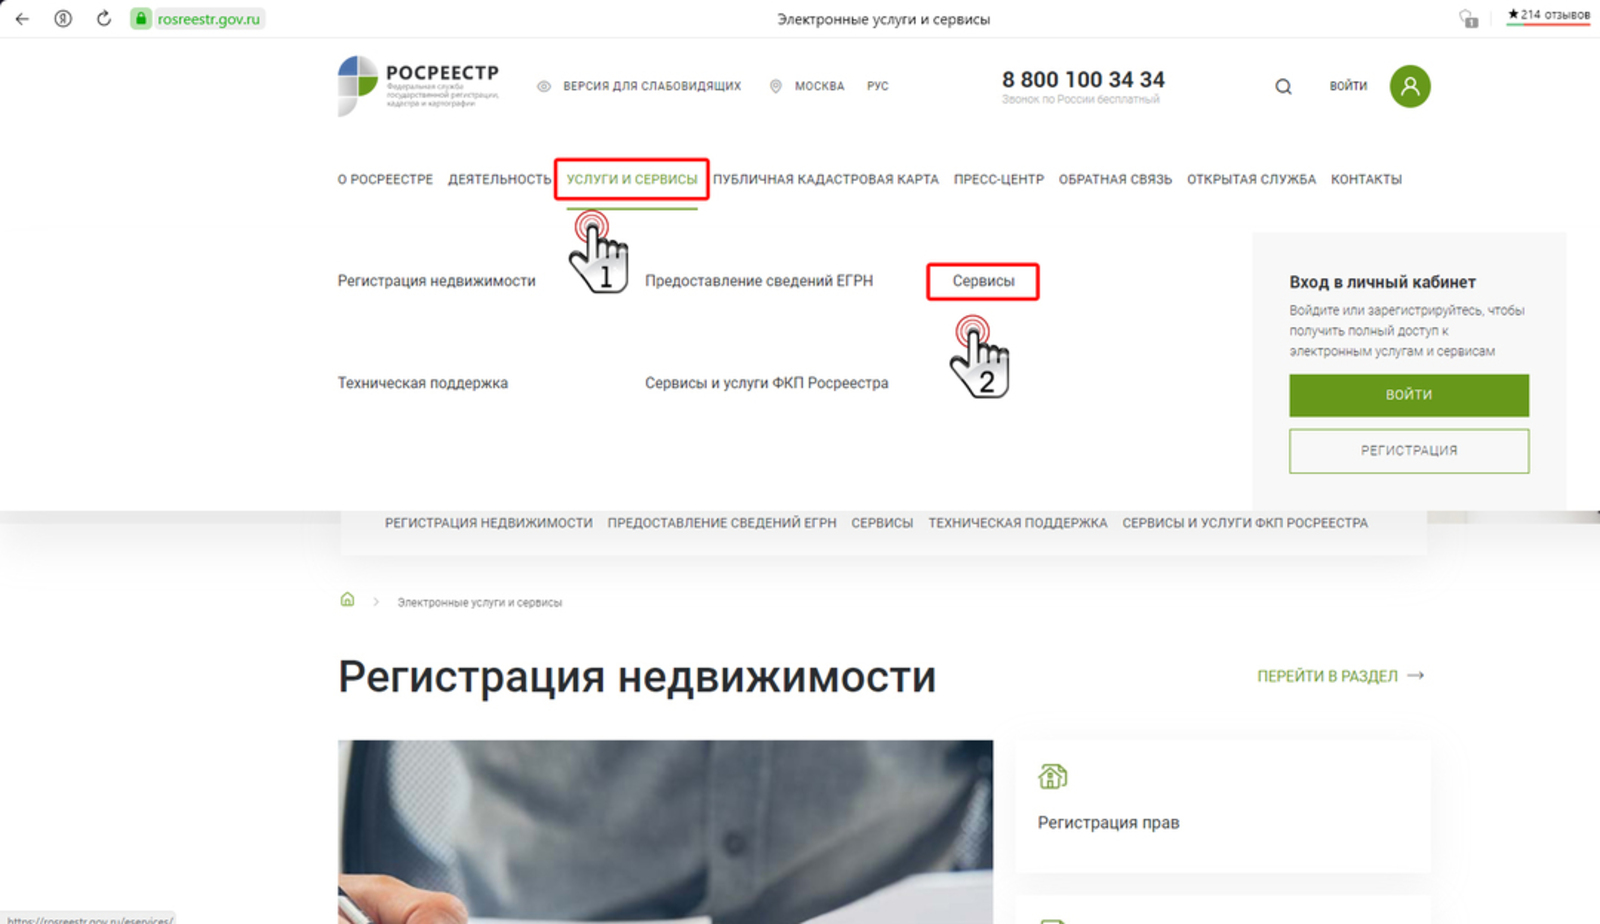 Башкортостан: упрощена процедура уточнения стадии заявления, поданного на оформление недвижимости